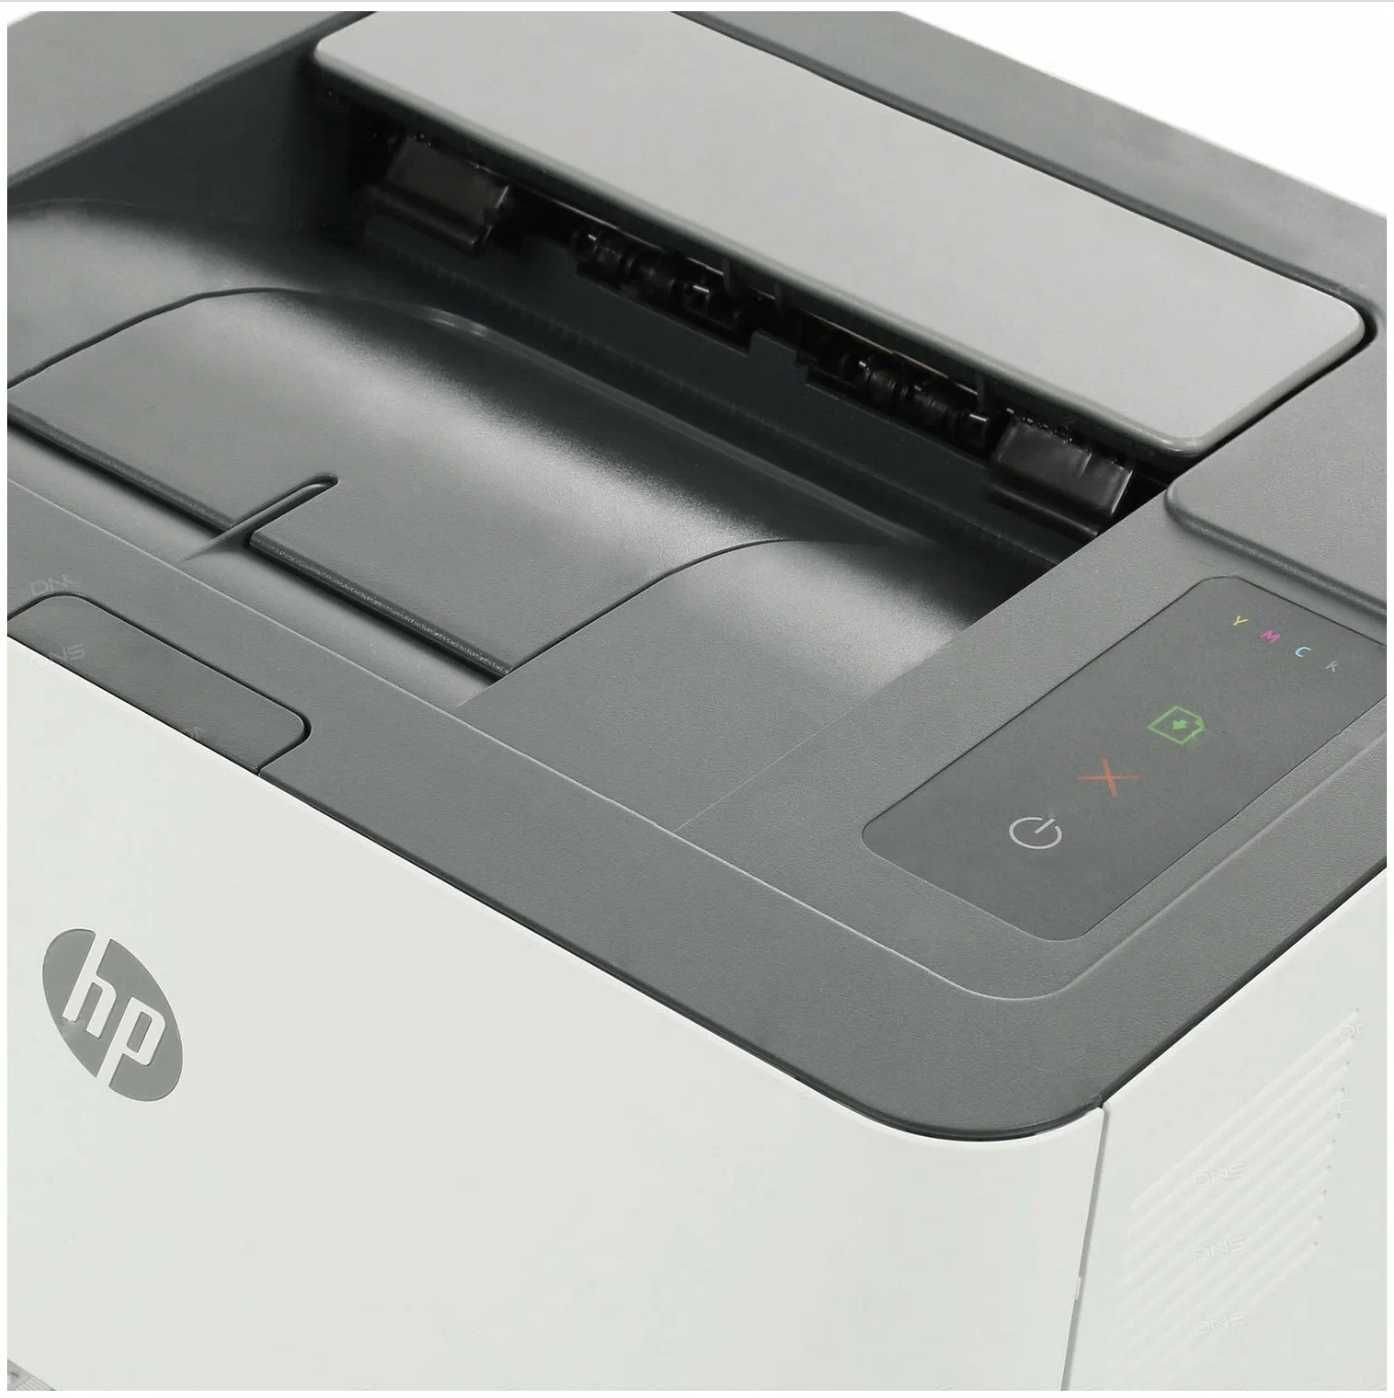 Цветной лазерный принтер A4 принтер HP. Доставка/Гарантия/Ф.О. любая